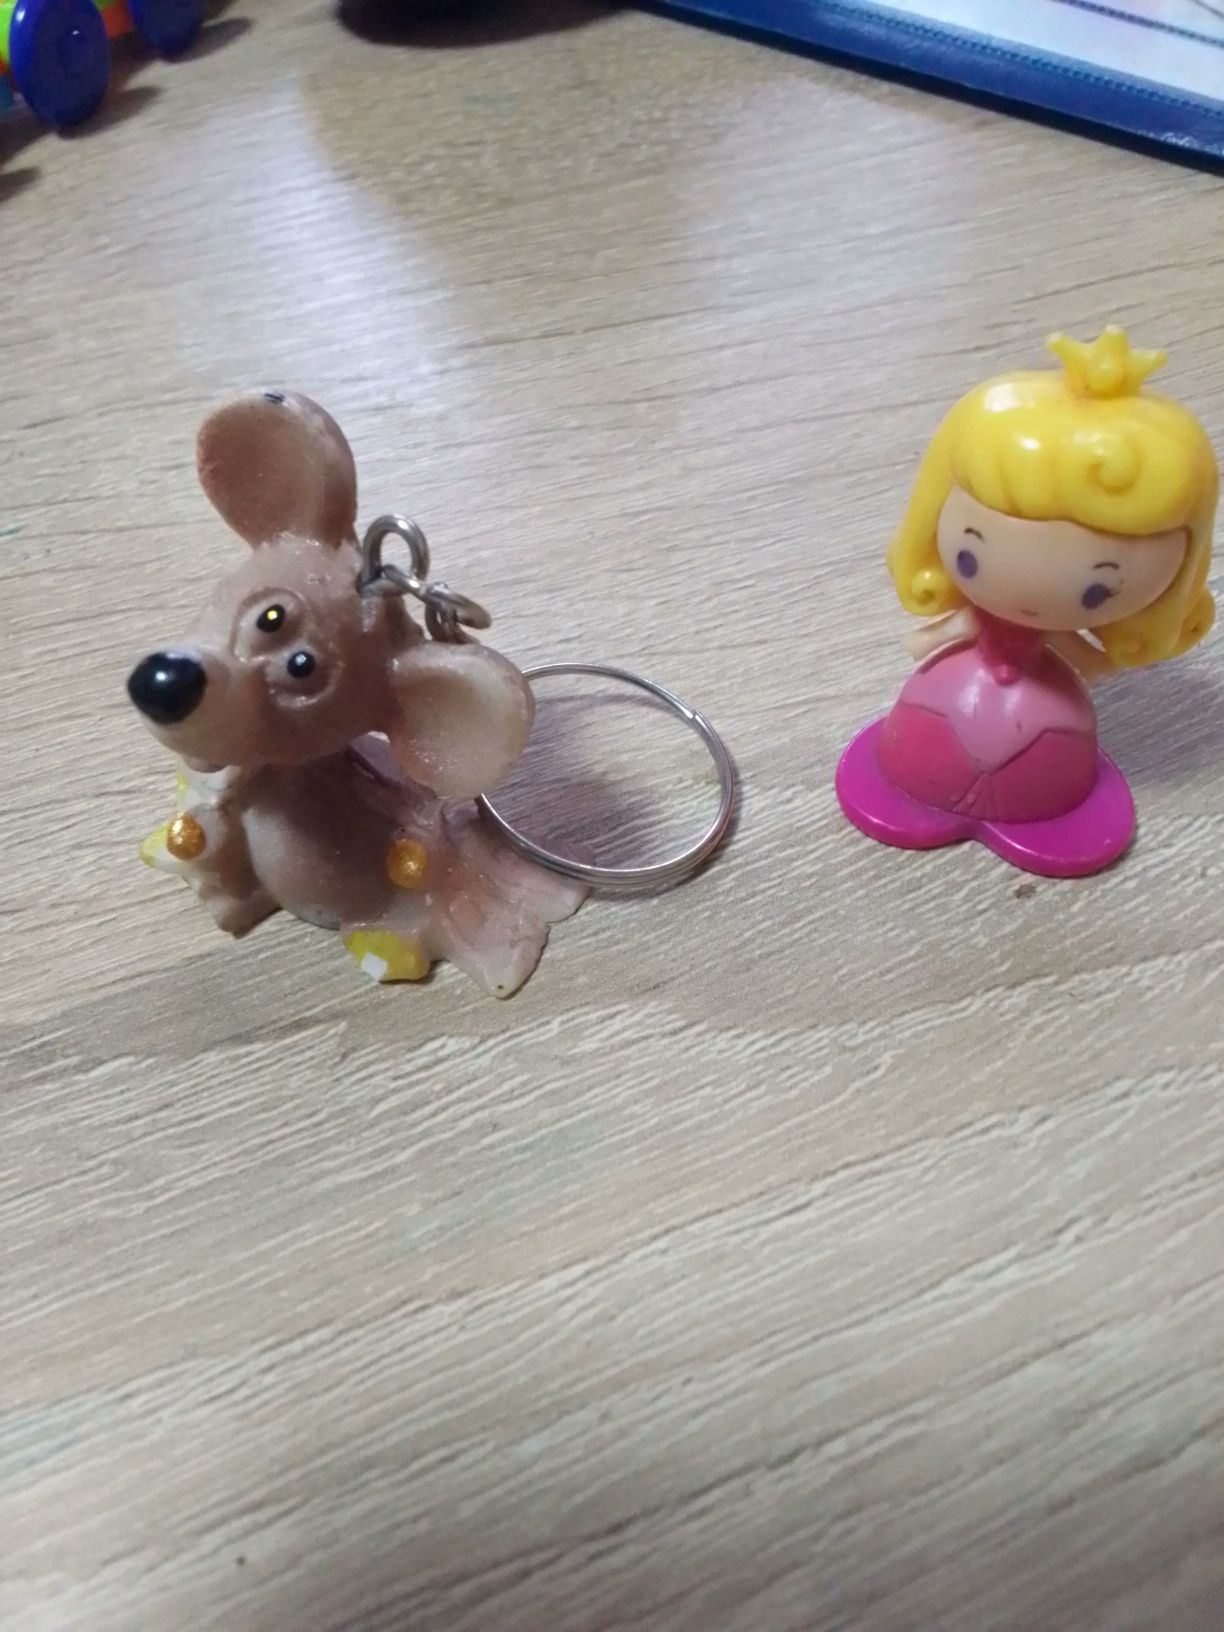 Іграшки: принцеси, мишка статуетка,іграшки з Макдональдс віддам